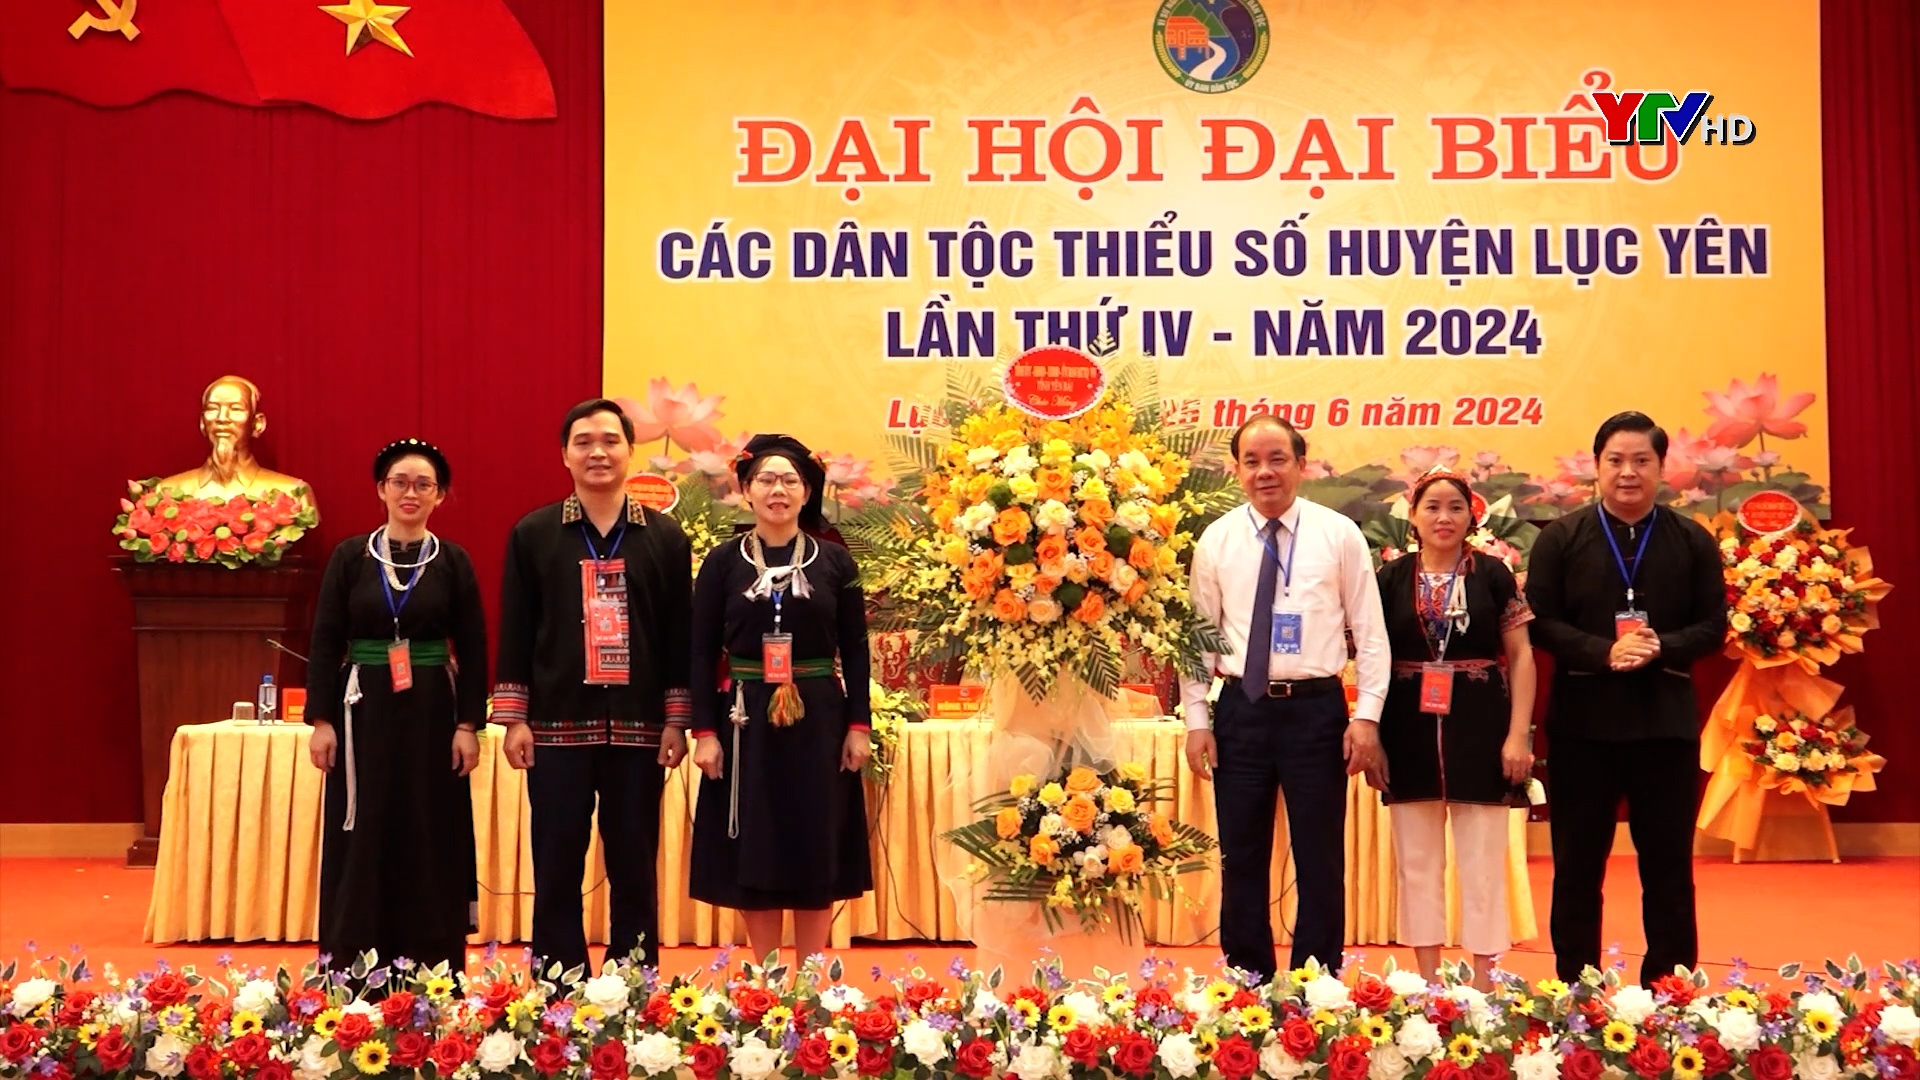 Đại hội đại biểu các dân tộc thiểu số huyện Lục Yên năm 2024